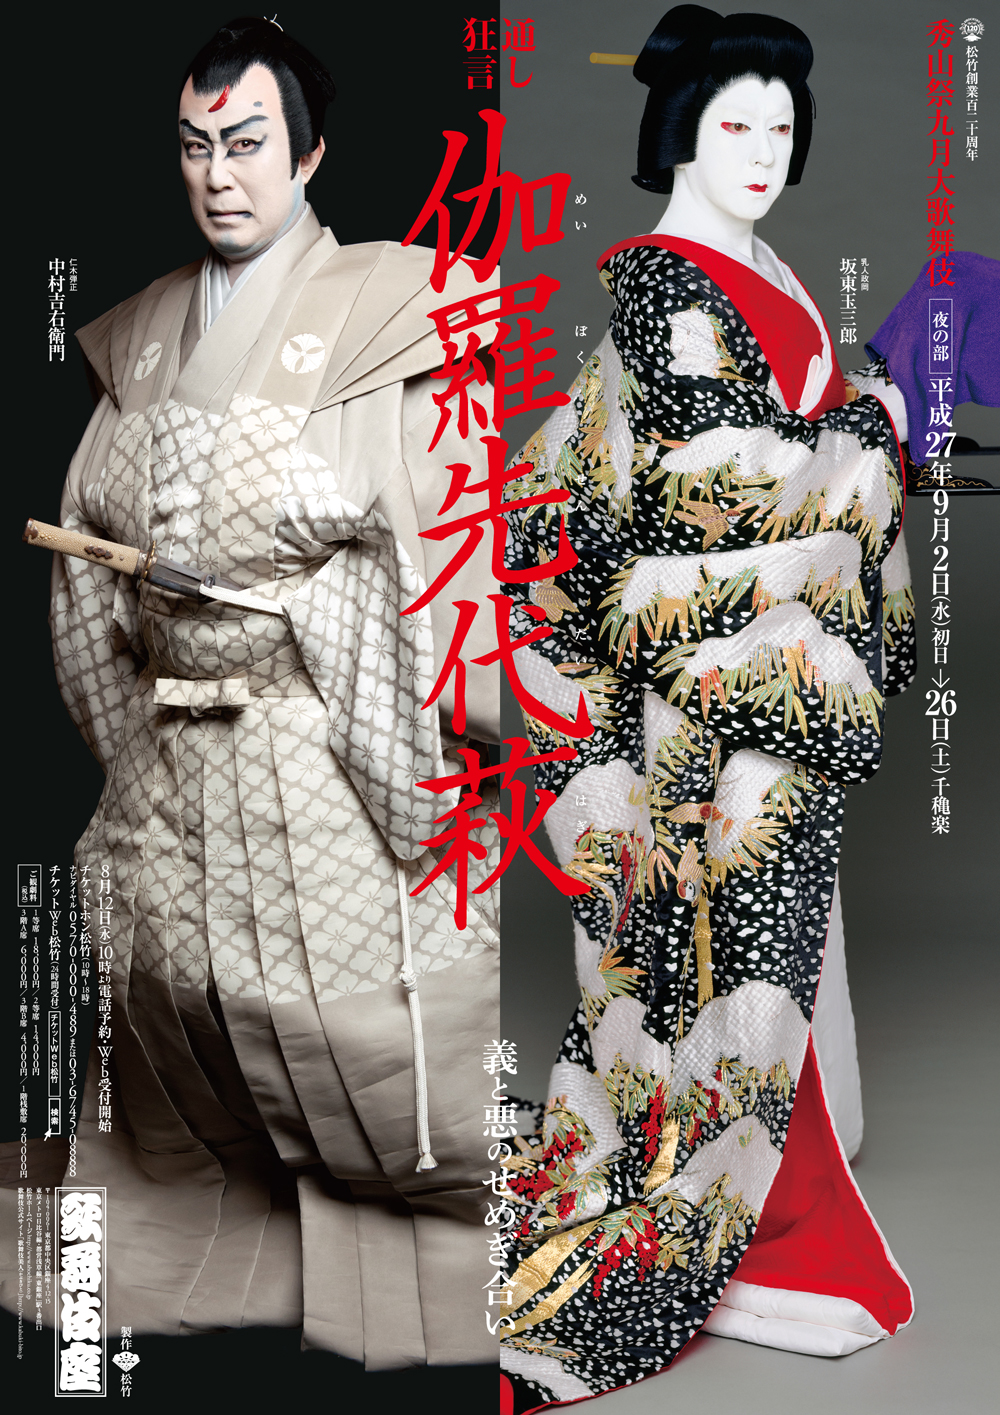 歌舞伎座「秀山祭九月大歌舞伎」夜の部『伽羅先代萩』